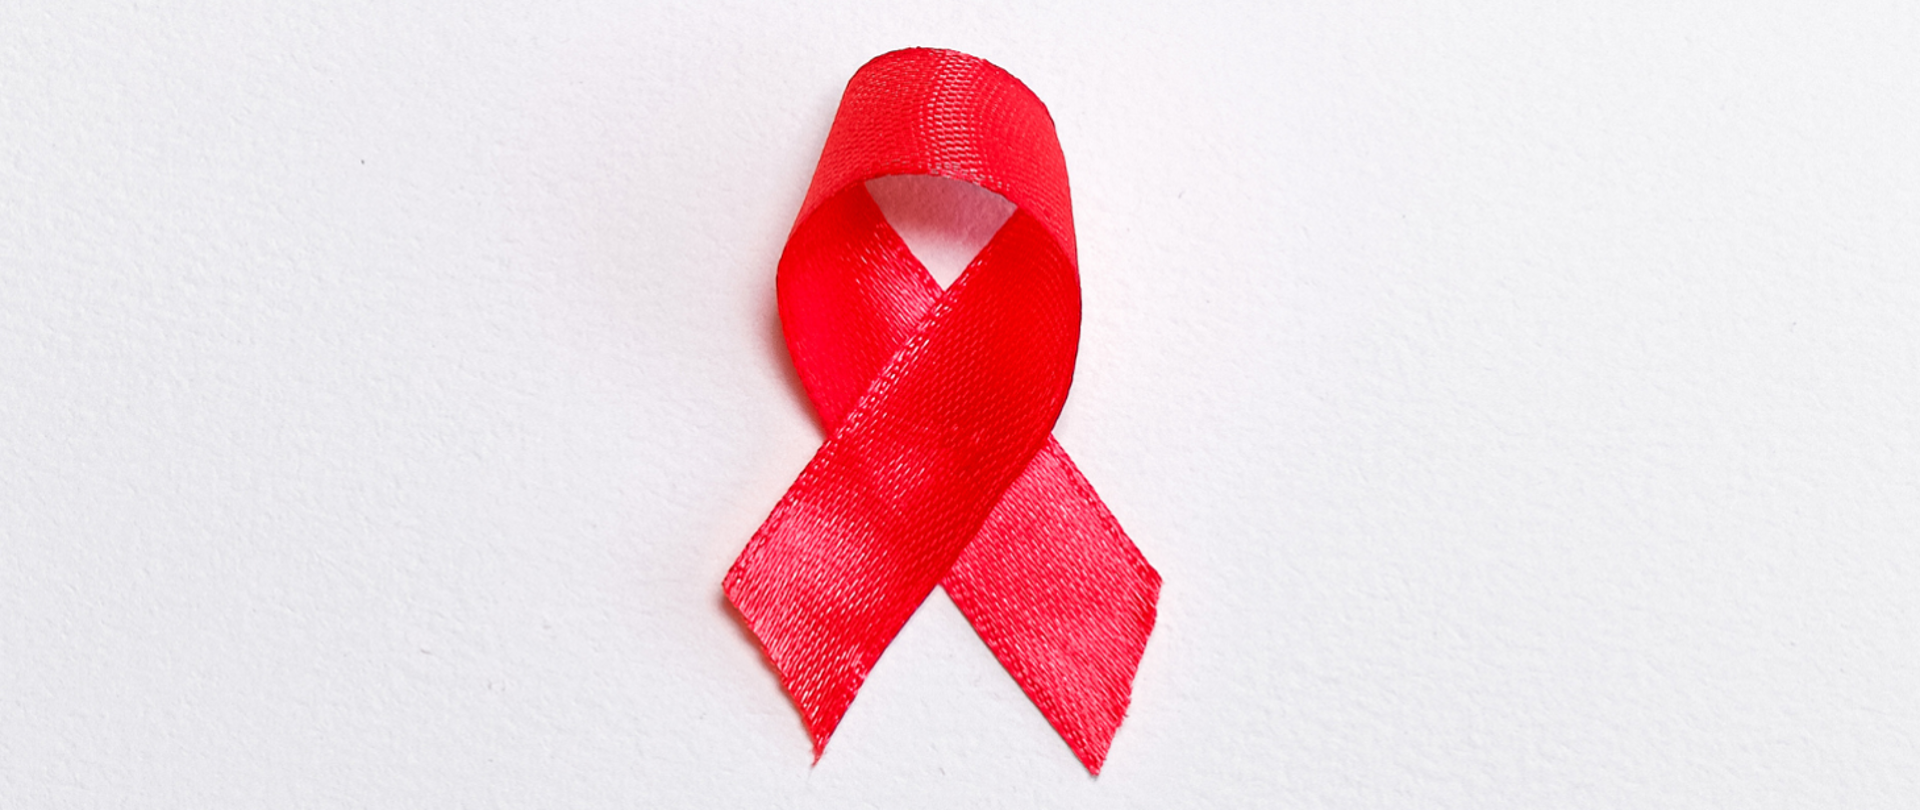 krajowy_program_zapobiegania_zakażeniom_hiv_i_zwalczania_aids_na_lata_2022-2026
bieg_po_zdrowie